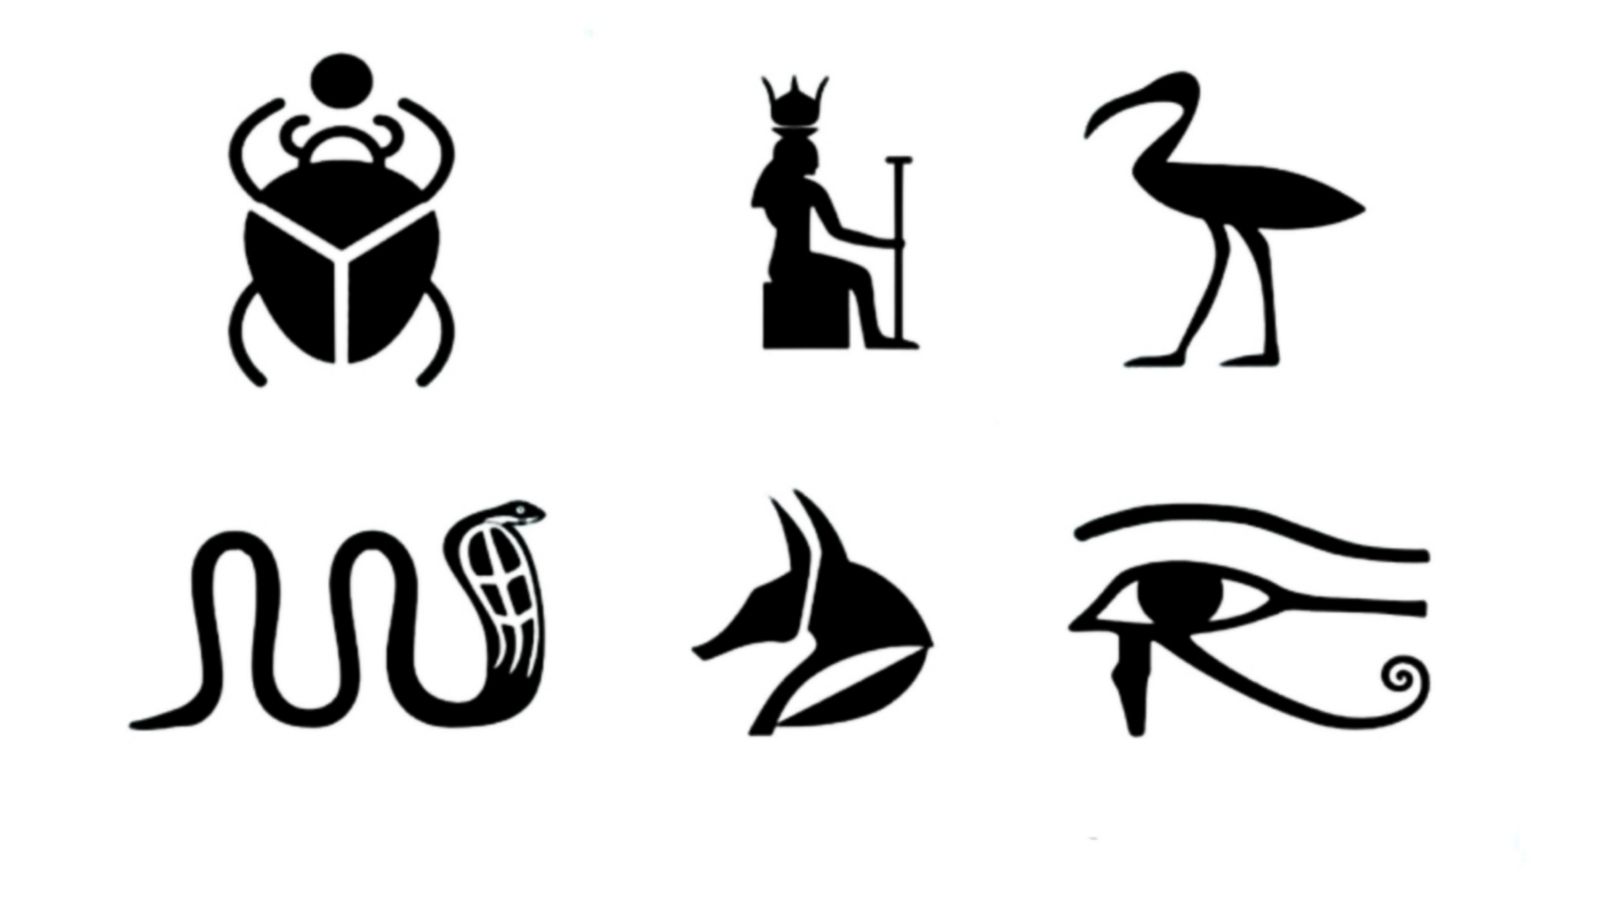 Trắc nghiệm: chọn biểu tượng Ai Cập và nhận lấy thông điệp ở hiện tại